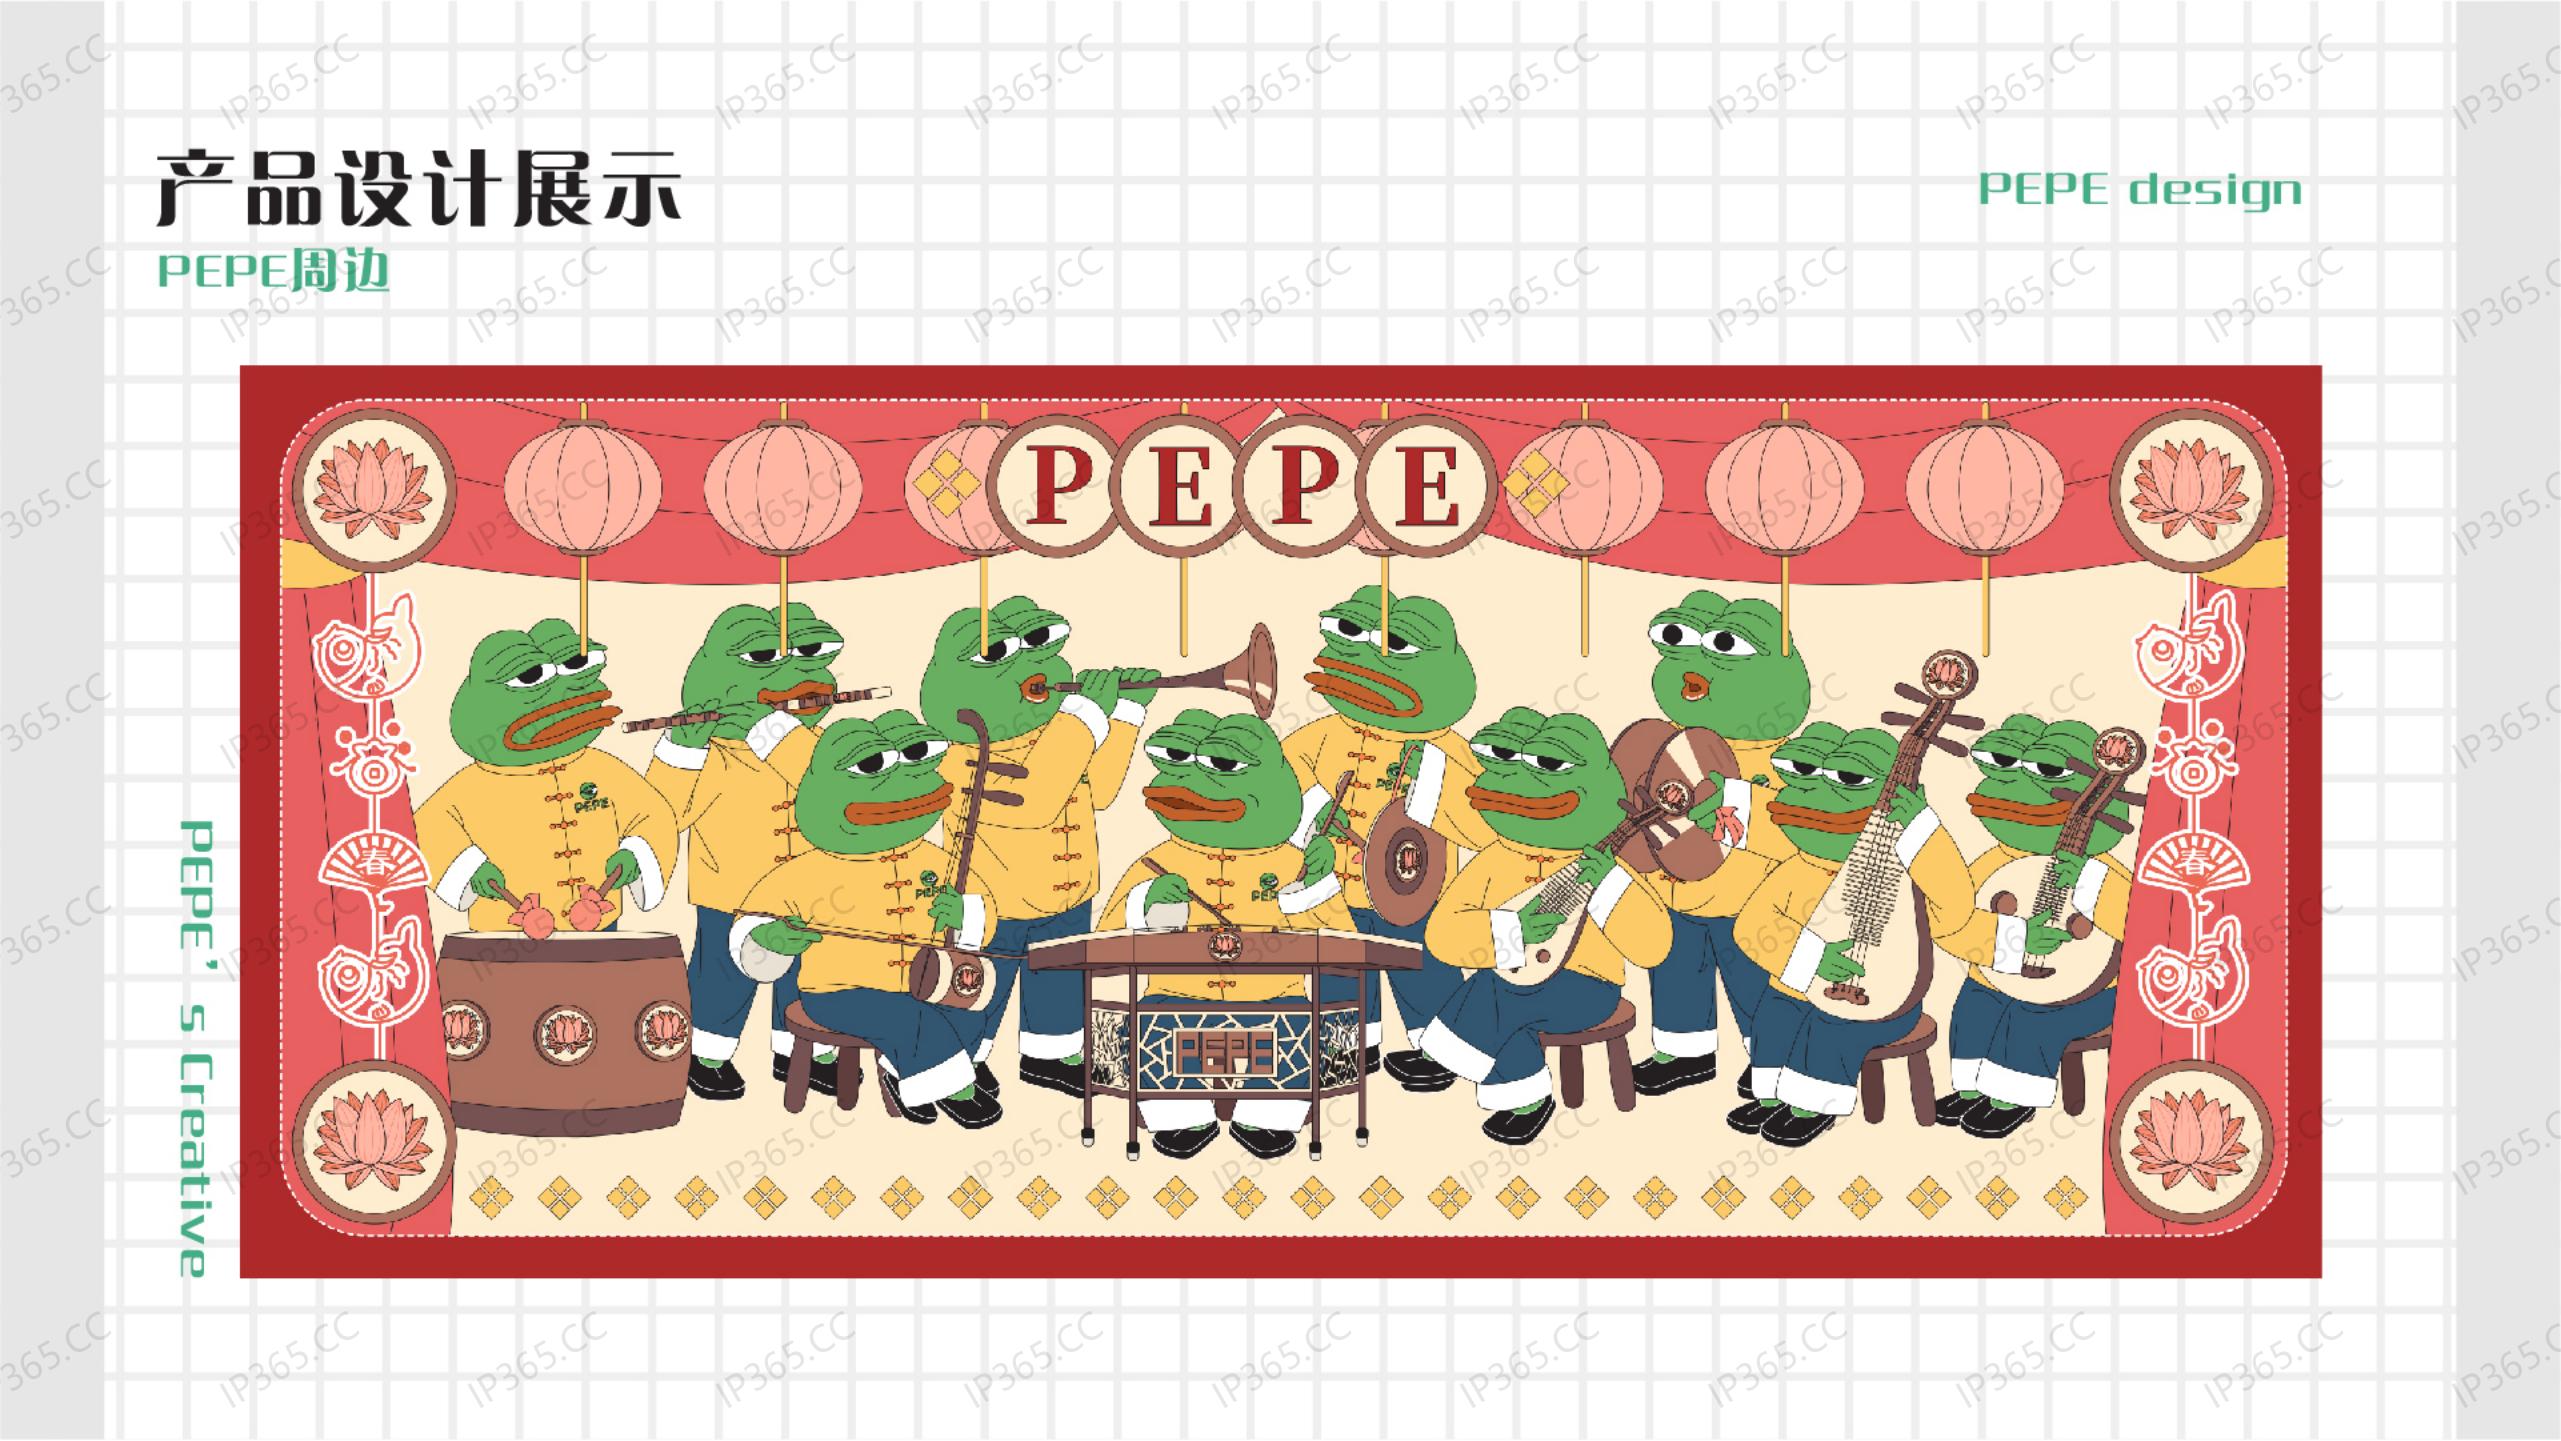 悲伤蛙PEPE 2020合作宣传手册_40.jpg